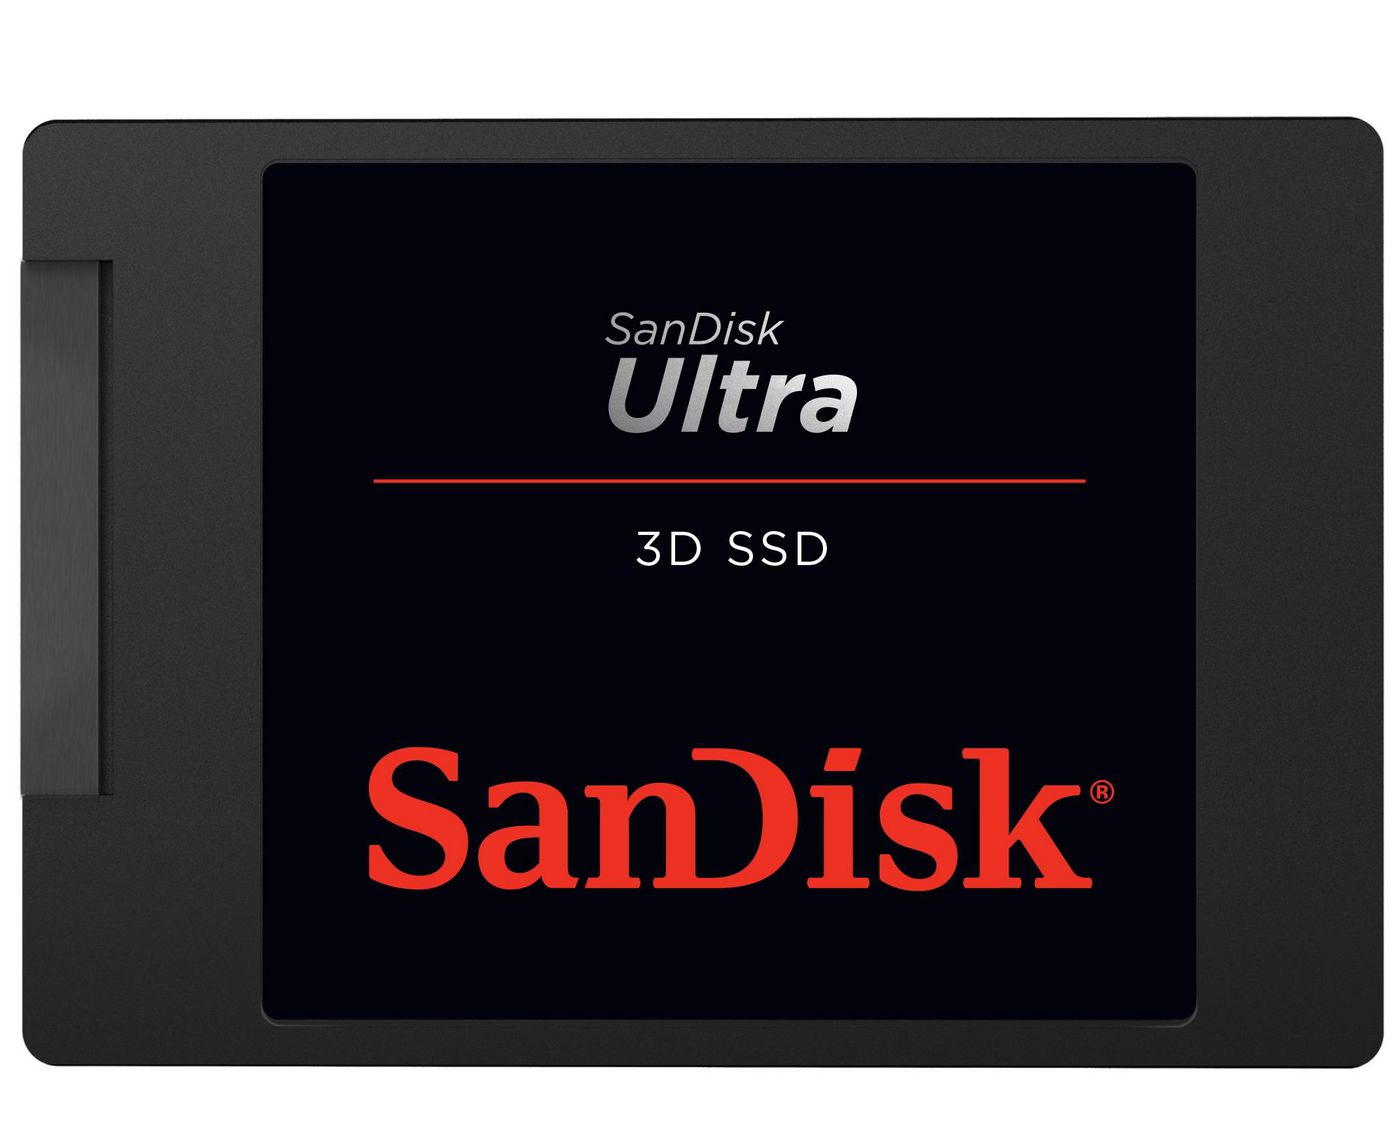 Sandisk SDSSDH3-500G-G25 SSD Ultra 3D 500GB 